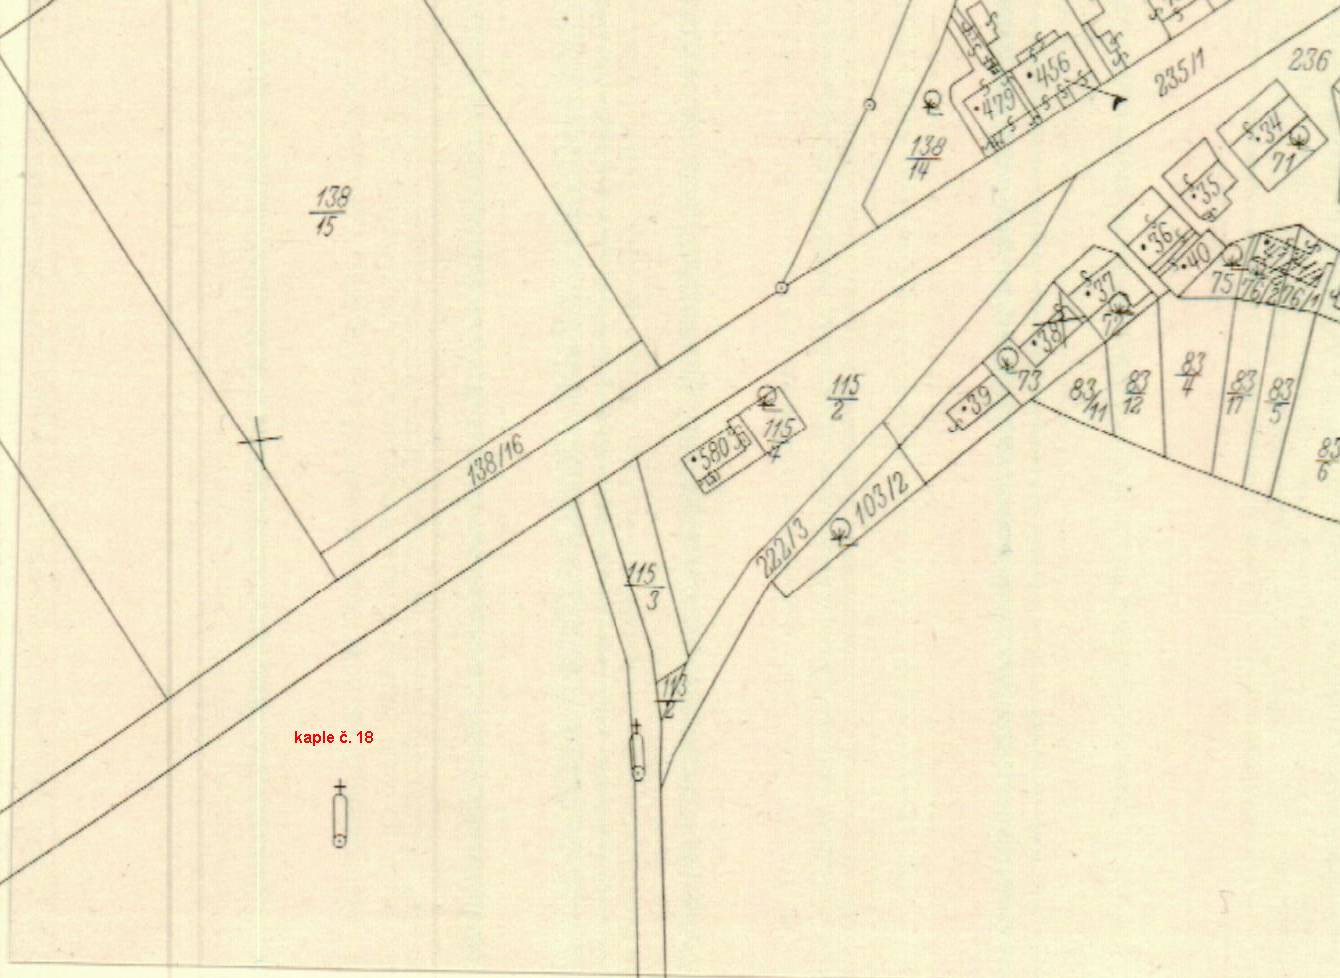 výpis_katastrální mapa_1943_kaple č 18_k